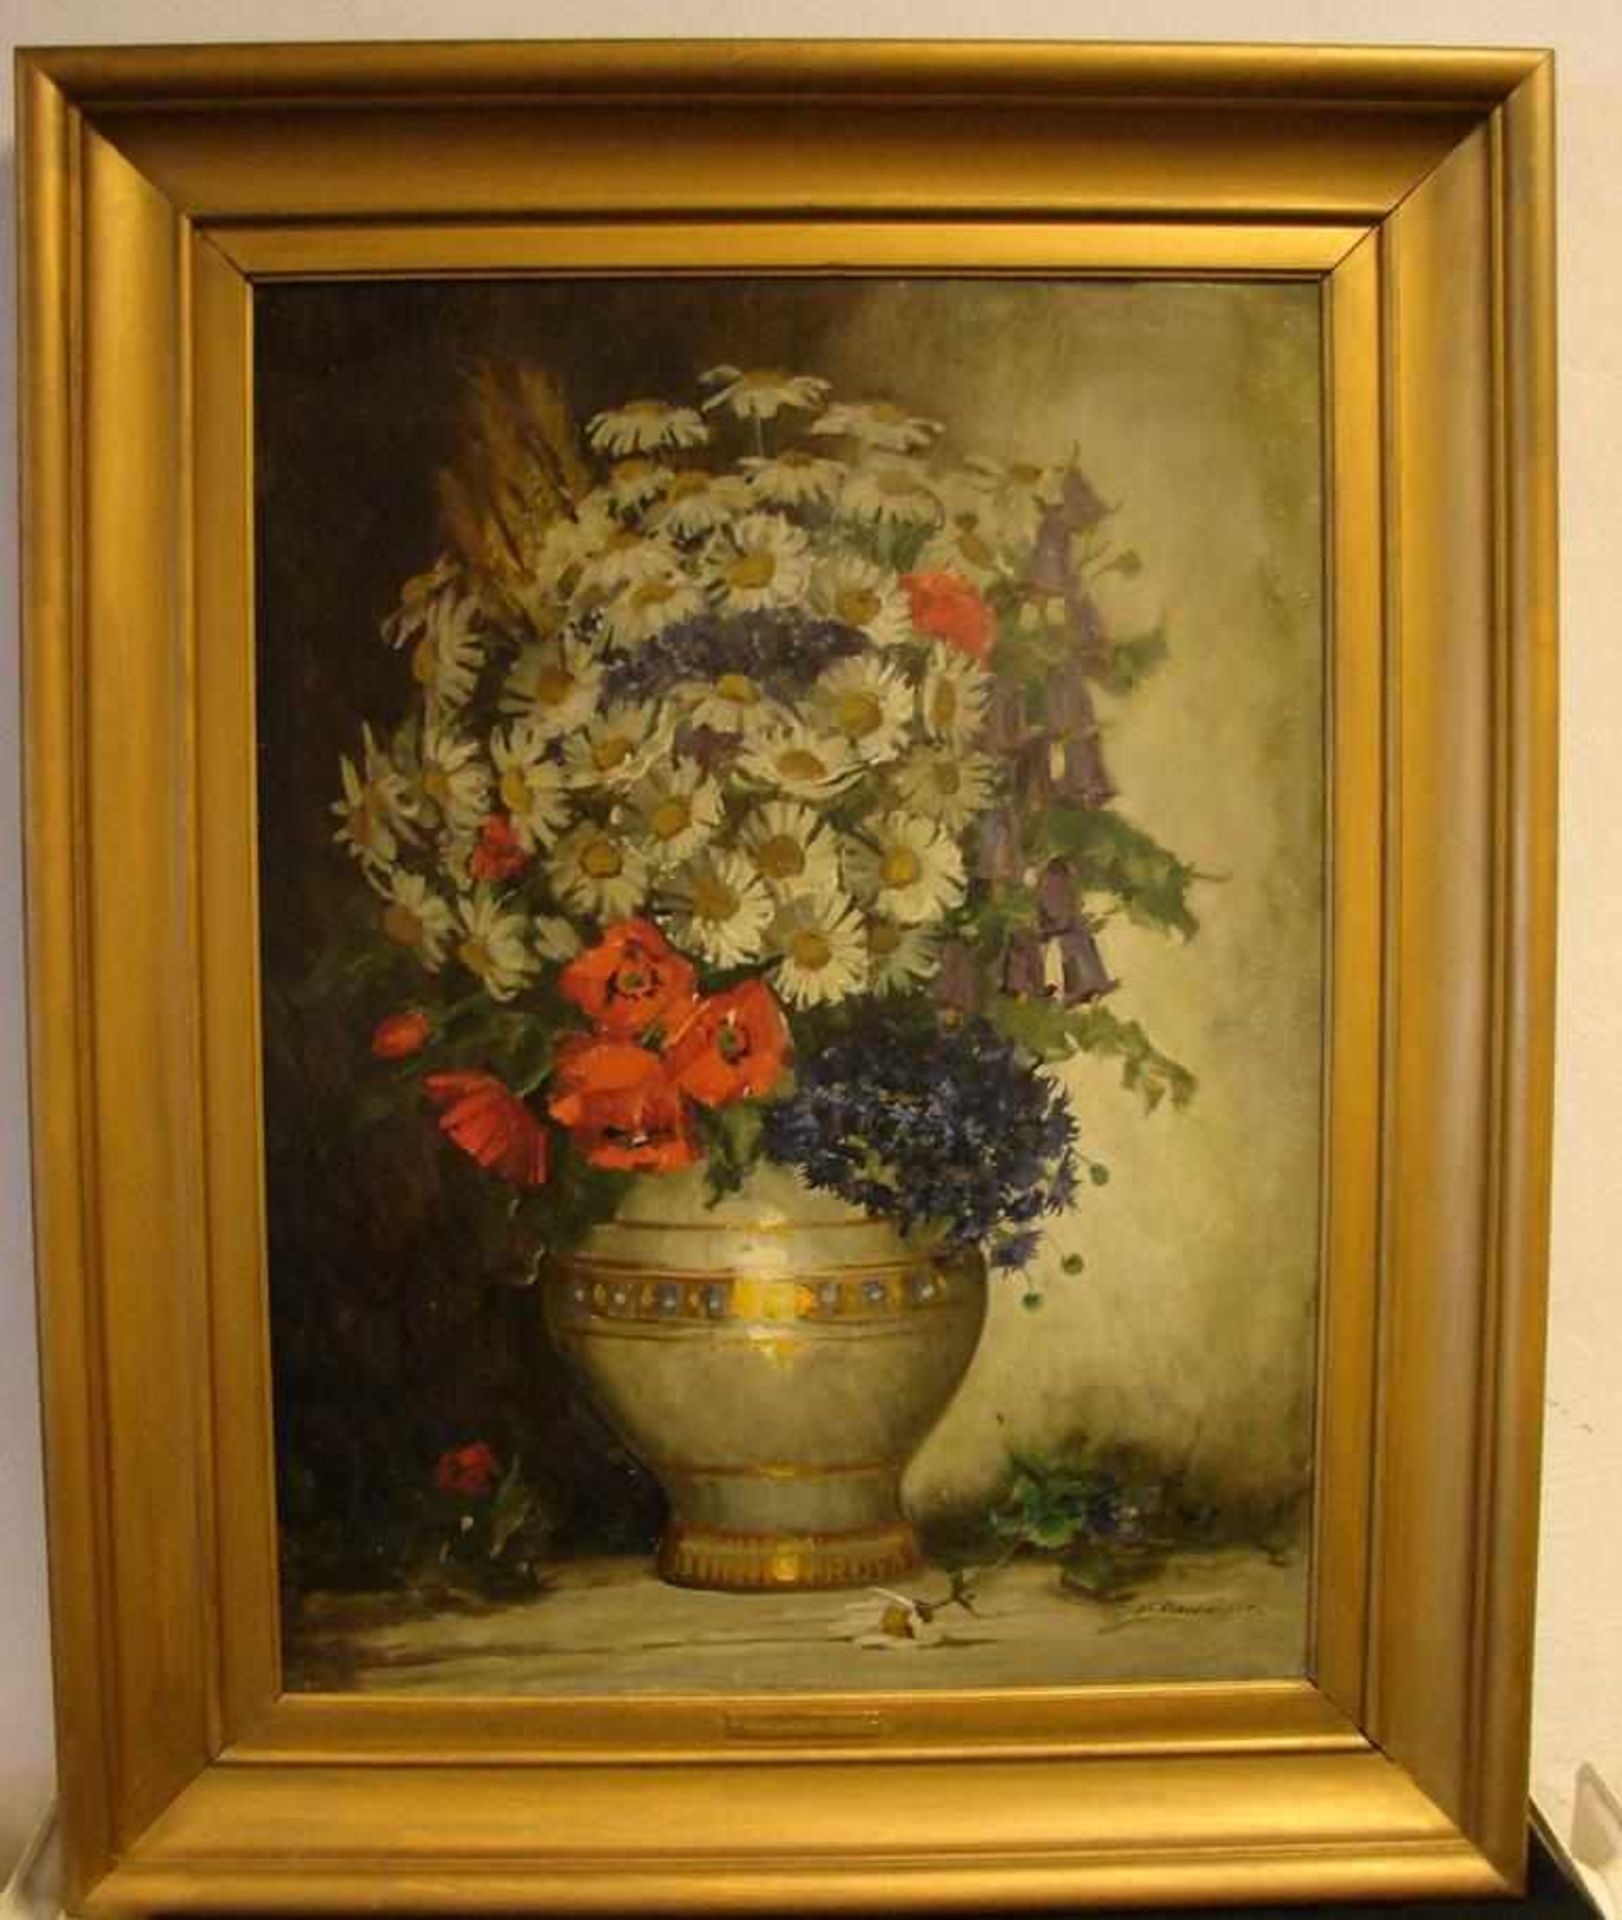 KL. HAUSMEYER, "Blumenstilleben", Öl/L, u.re.sig., ca. 79 x 58 cm<